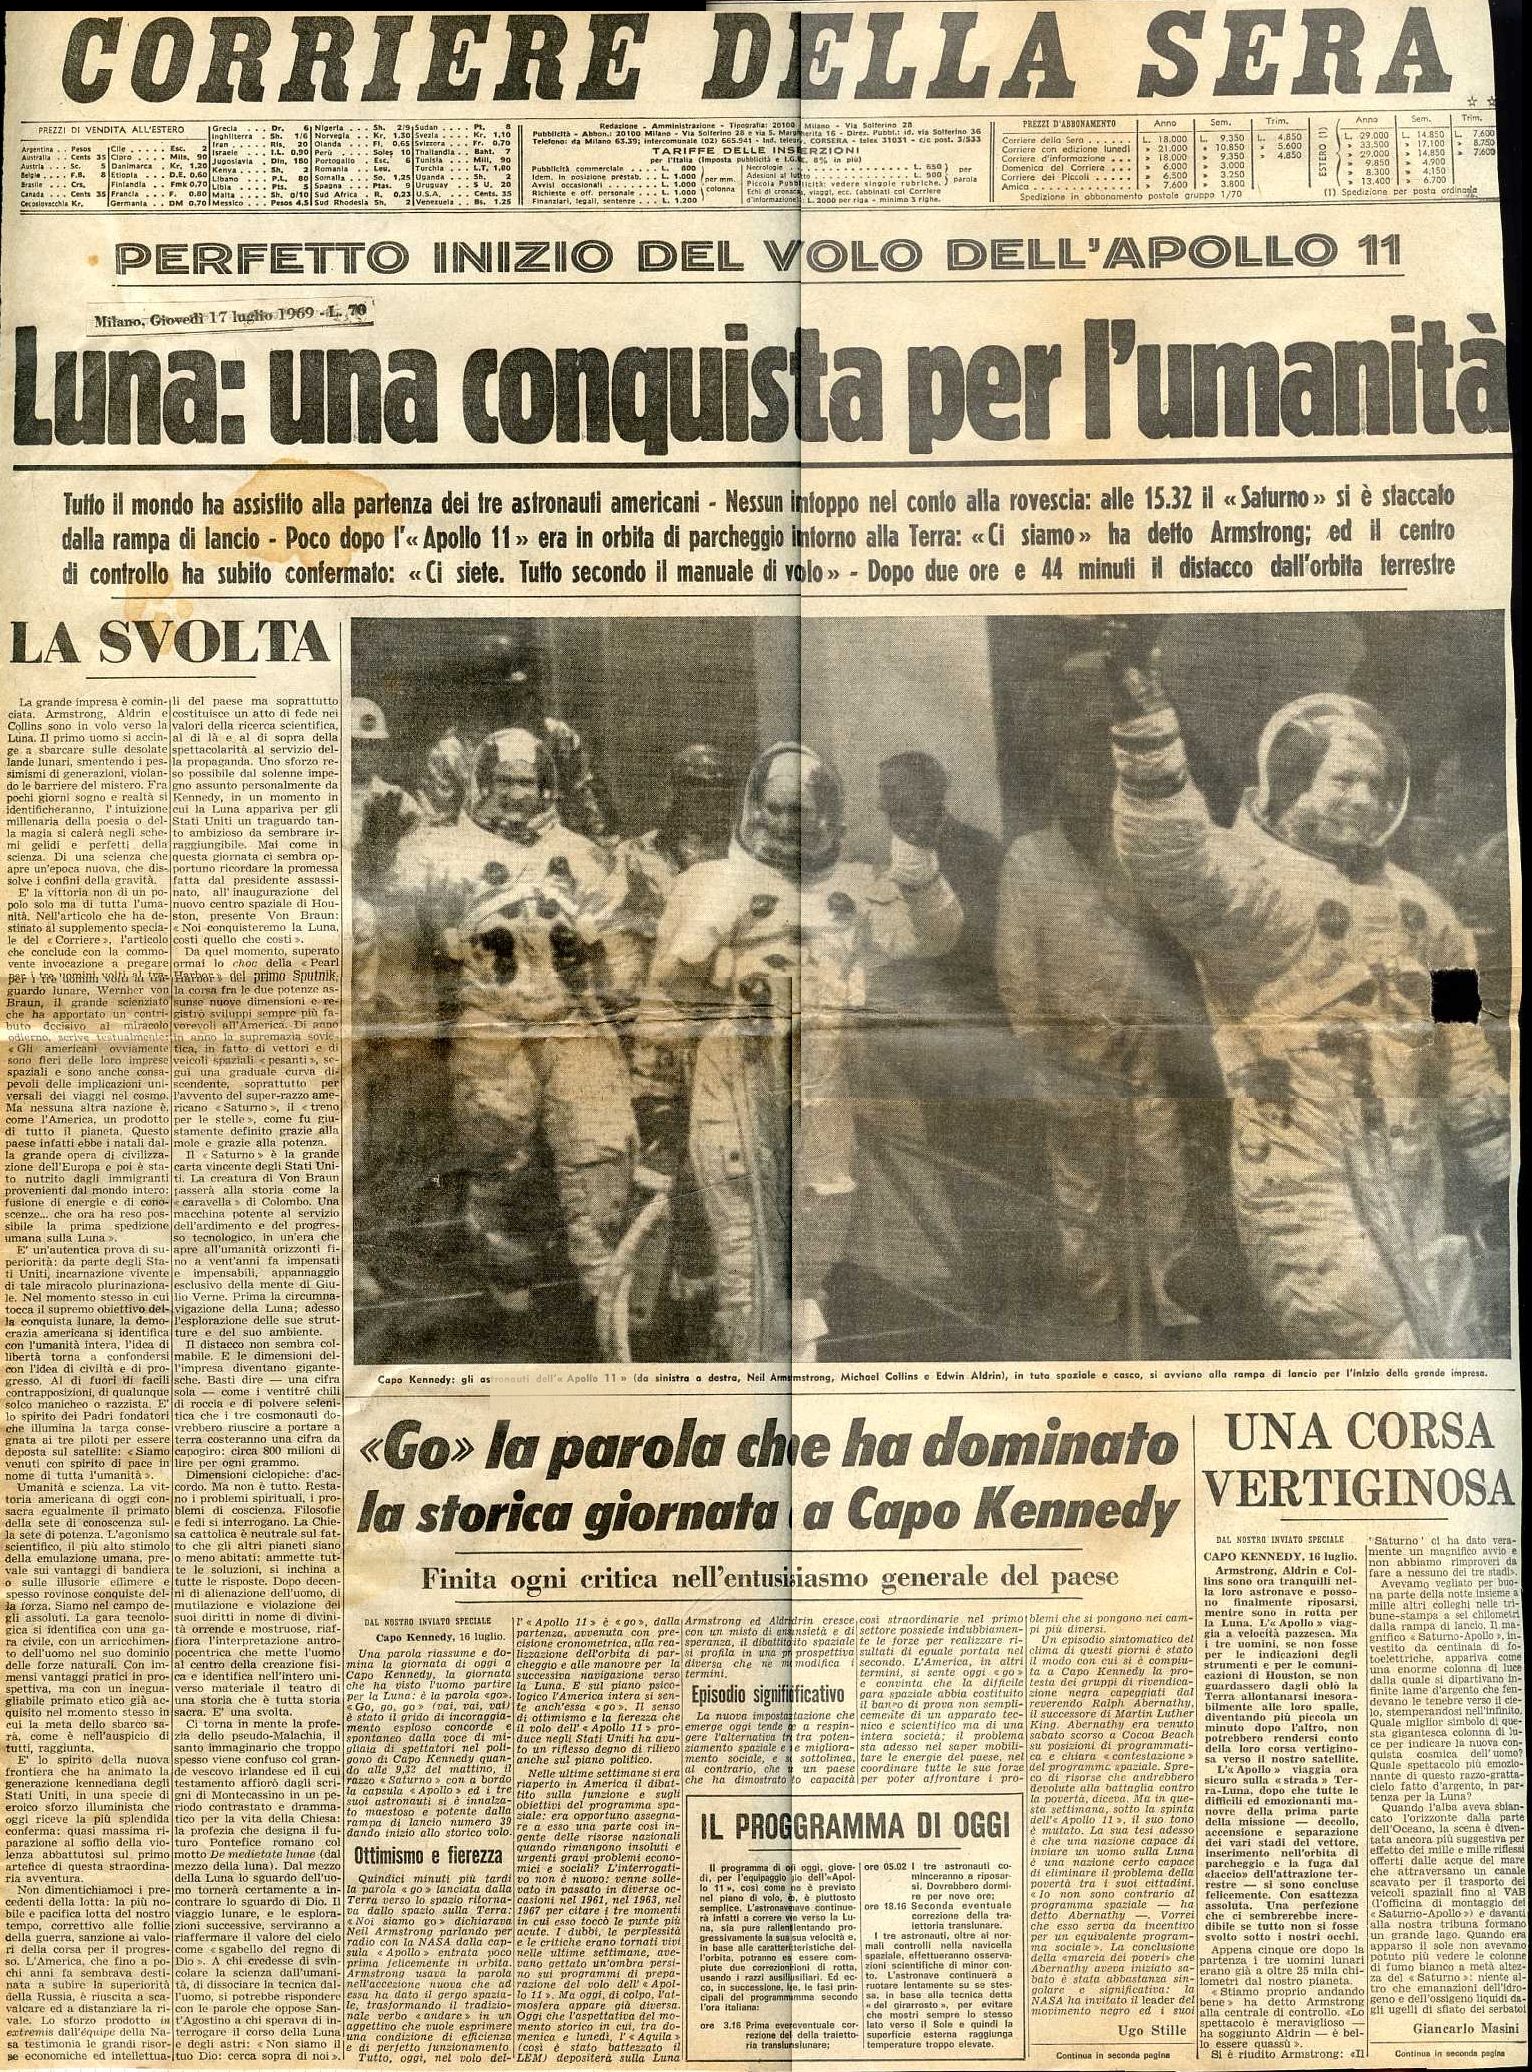 Copertina Correire 17 luglio 1969 (crediti Piero Corubolo)